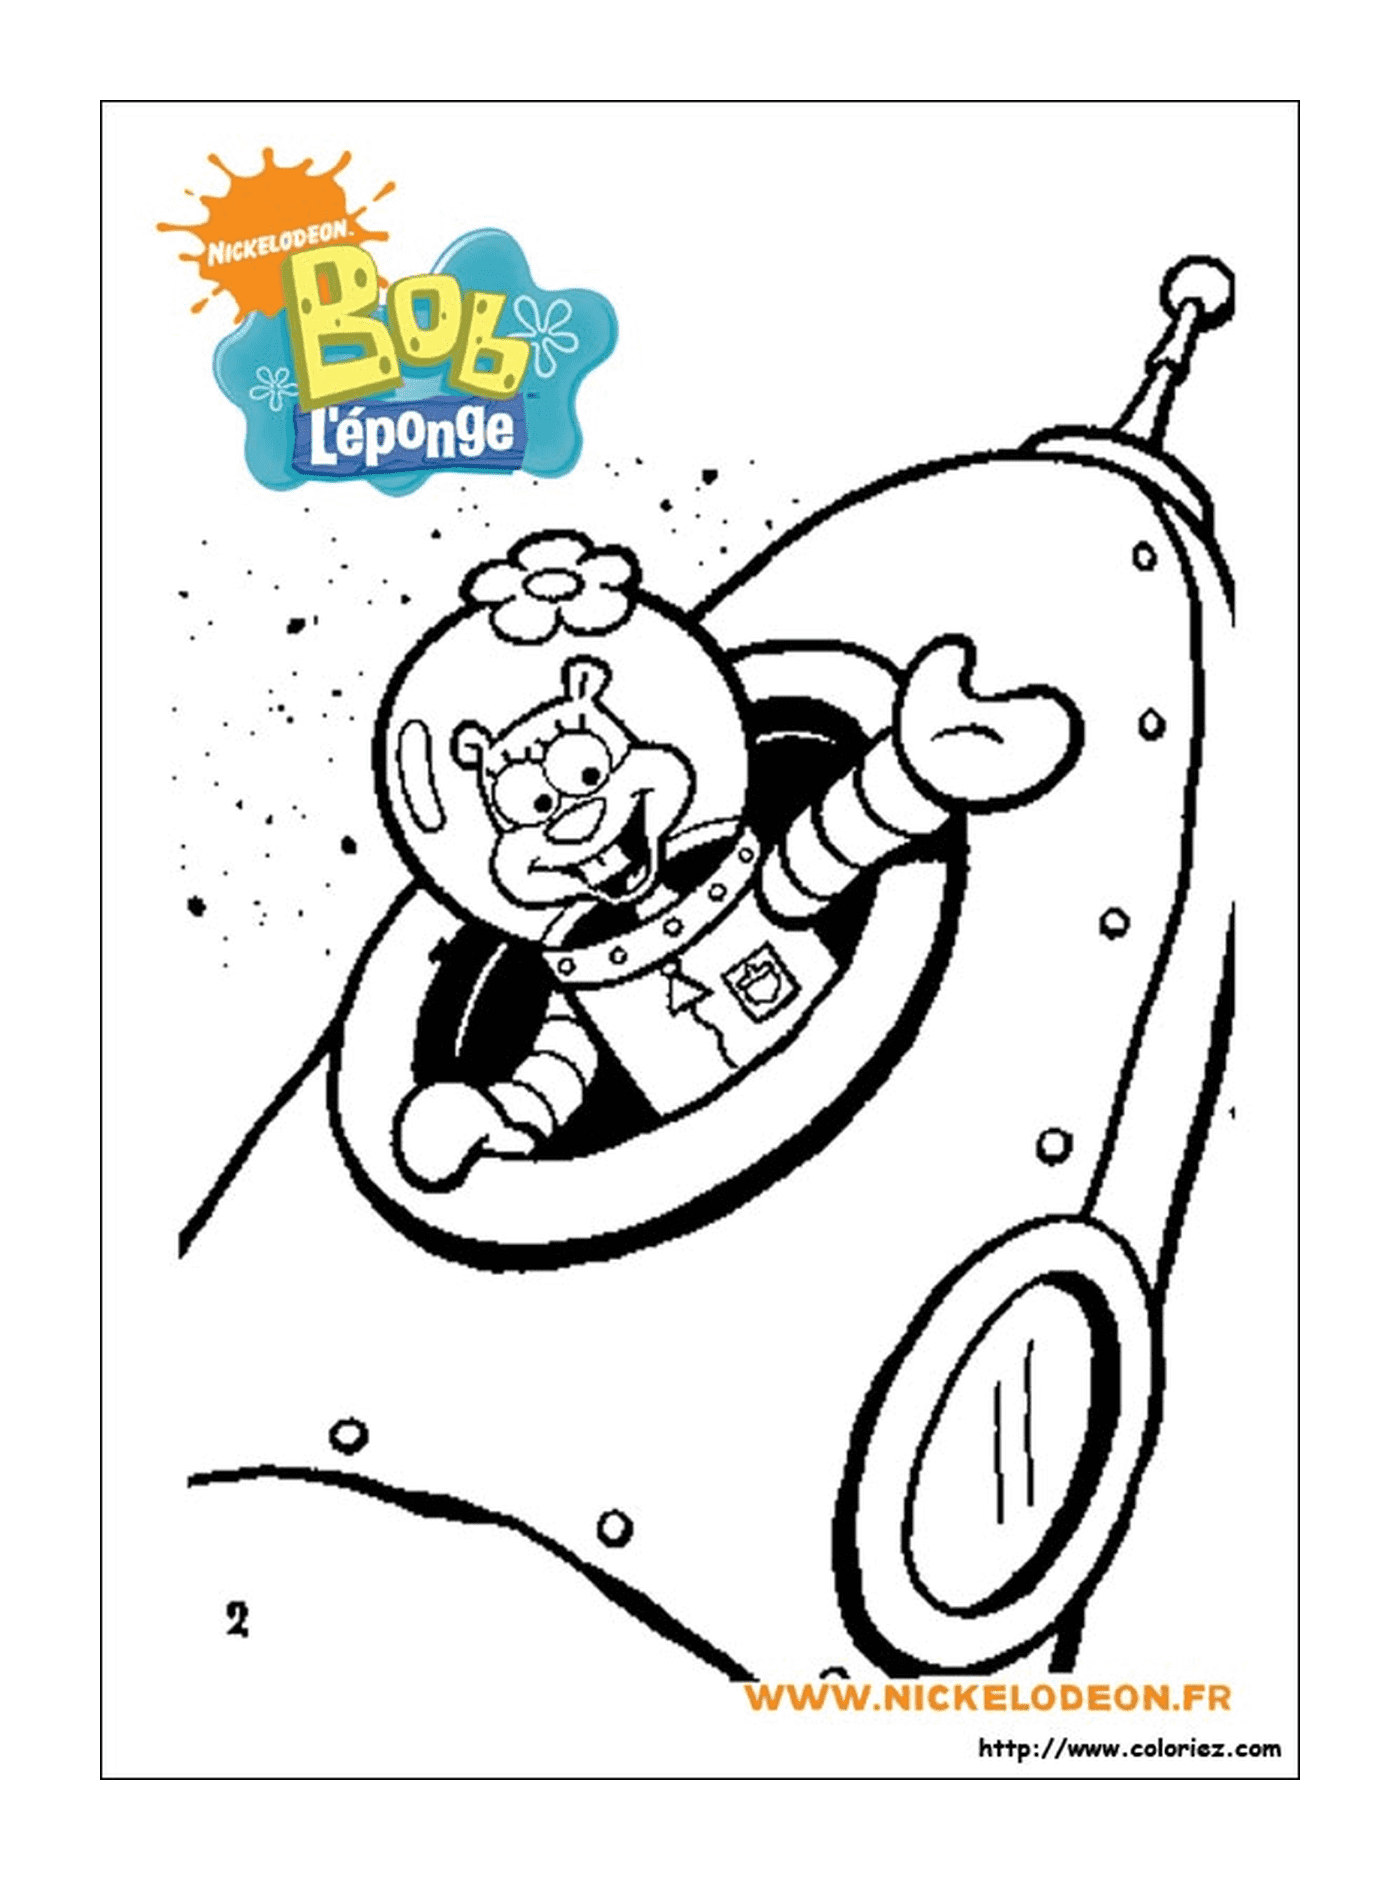  Spongebob, a cartoon character, dressed as an astronaut 